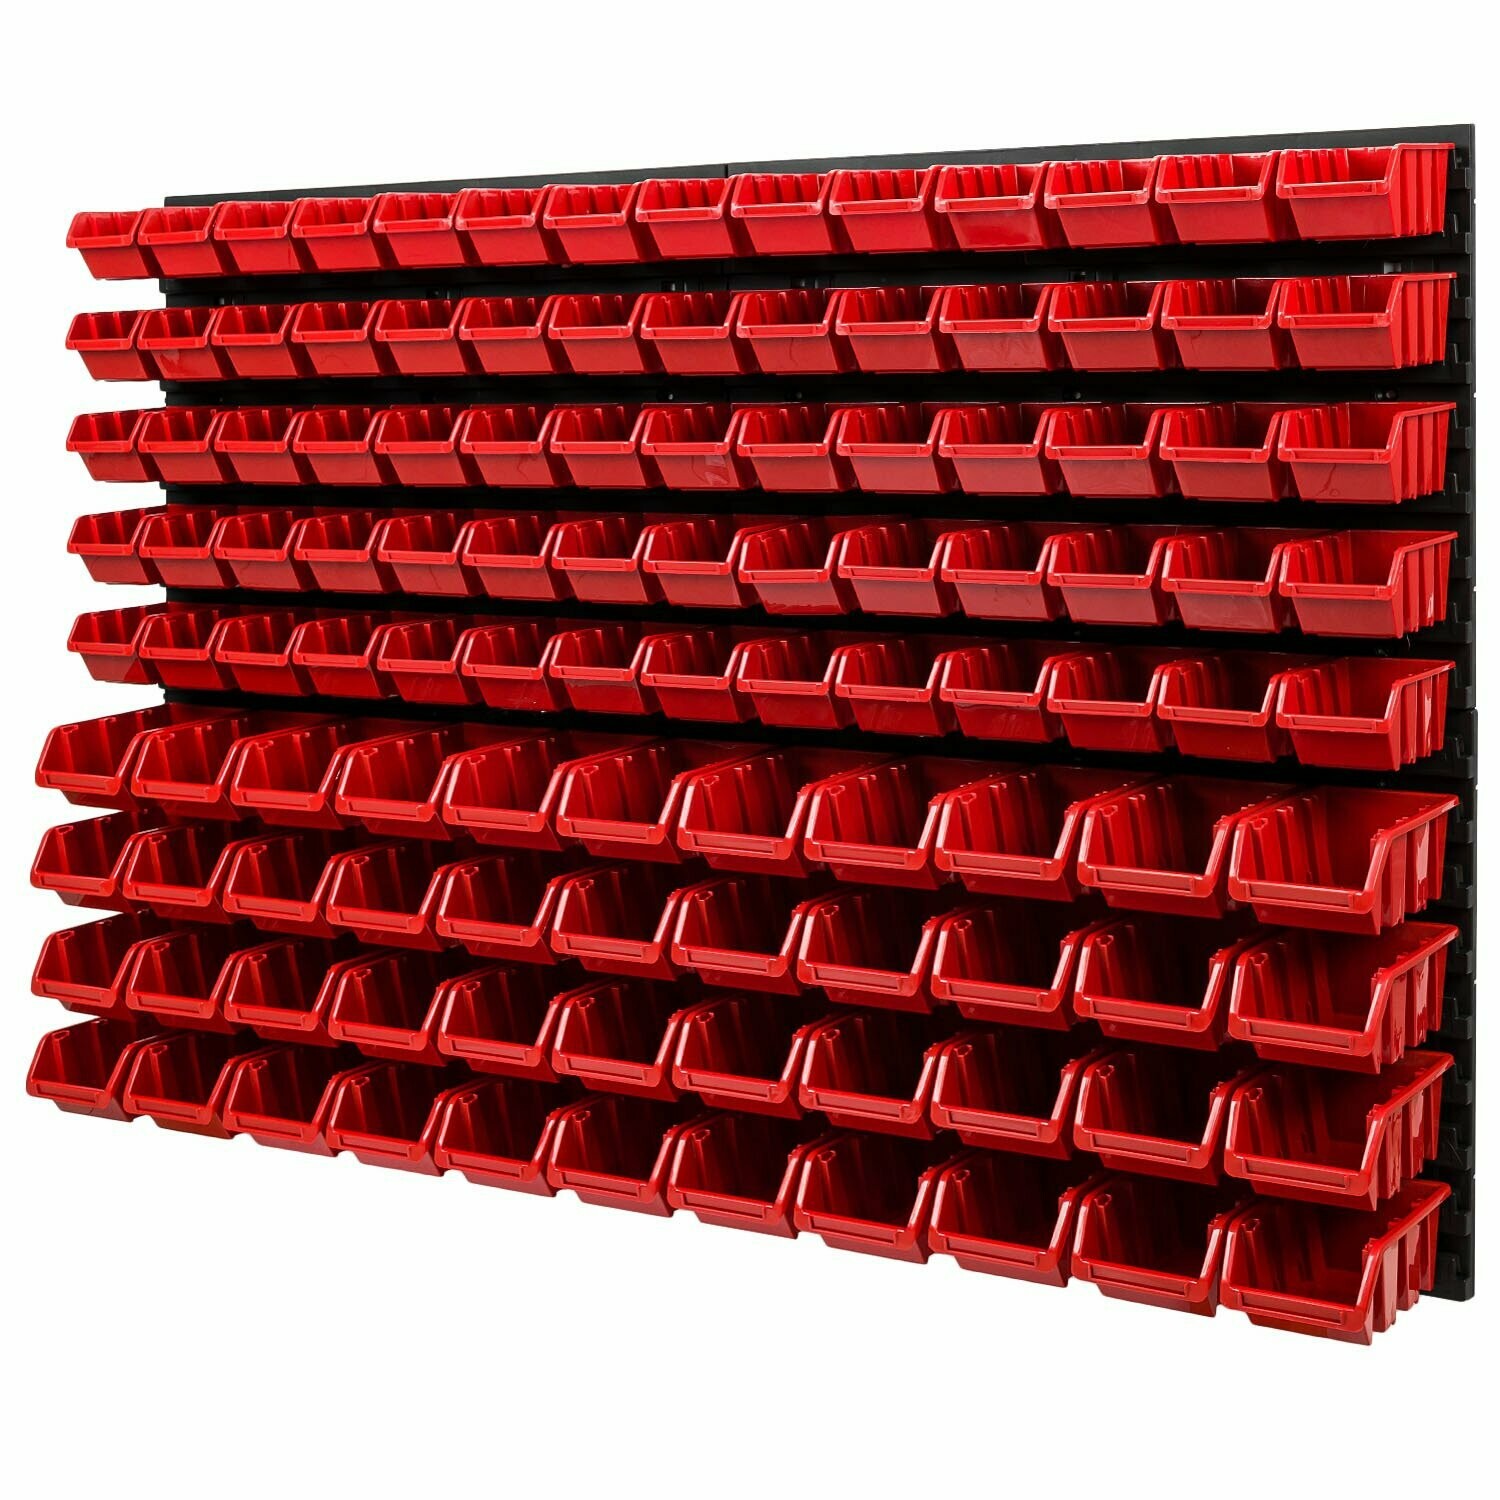 Wandregal + Stapelboxen + Werkzeughalter | Erweiterbar | Werkstattregal Lagerregal Steckregal Set Box 1152x780mm